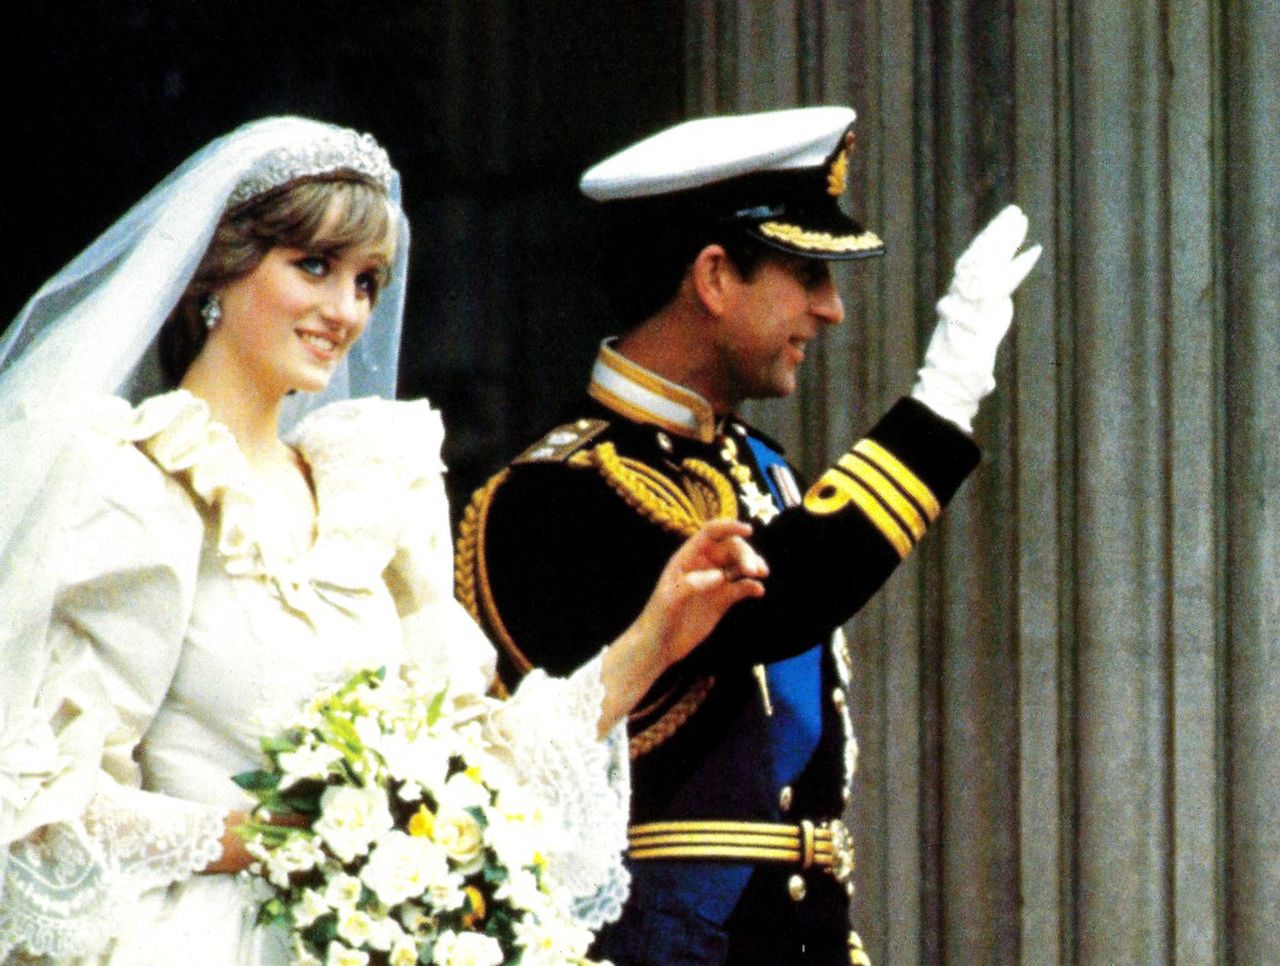 Matrimonio Lady Diana Carlo